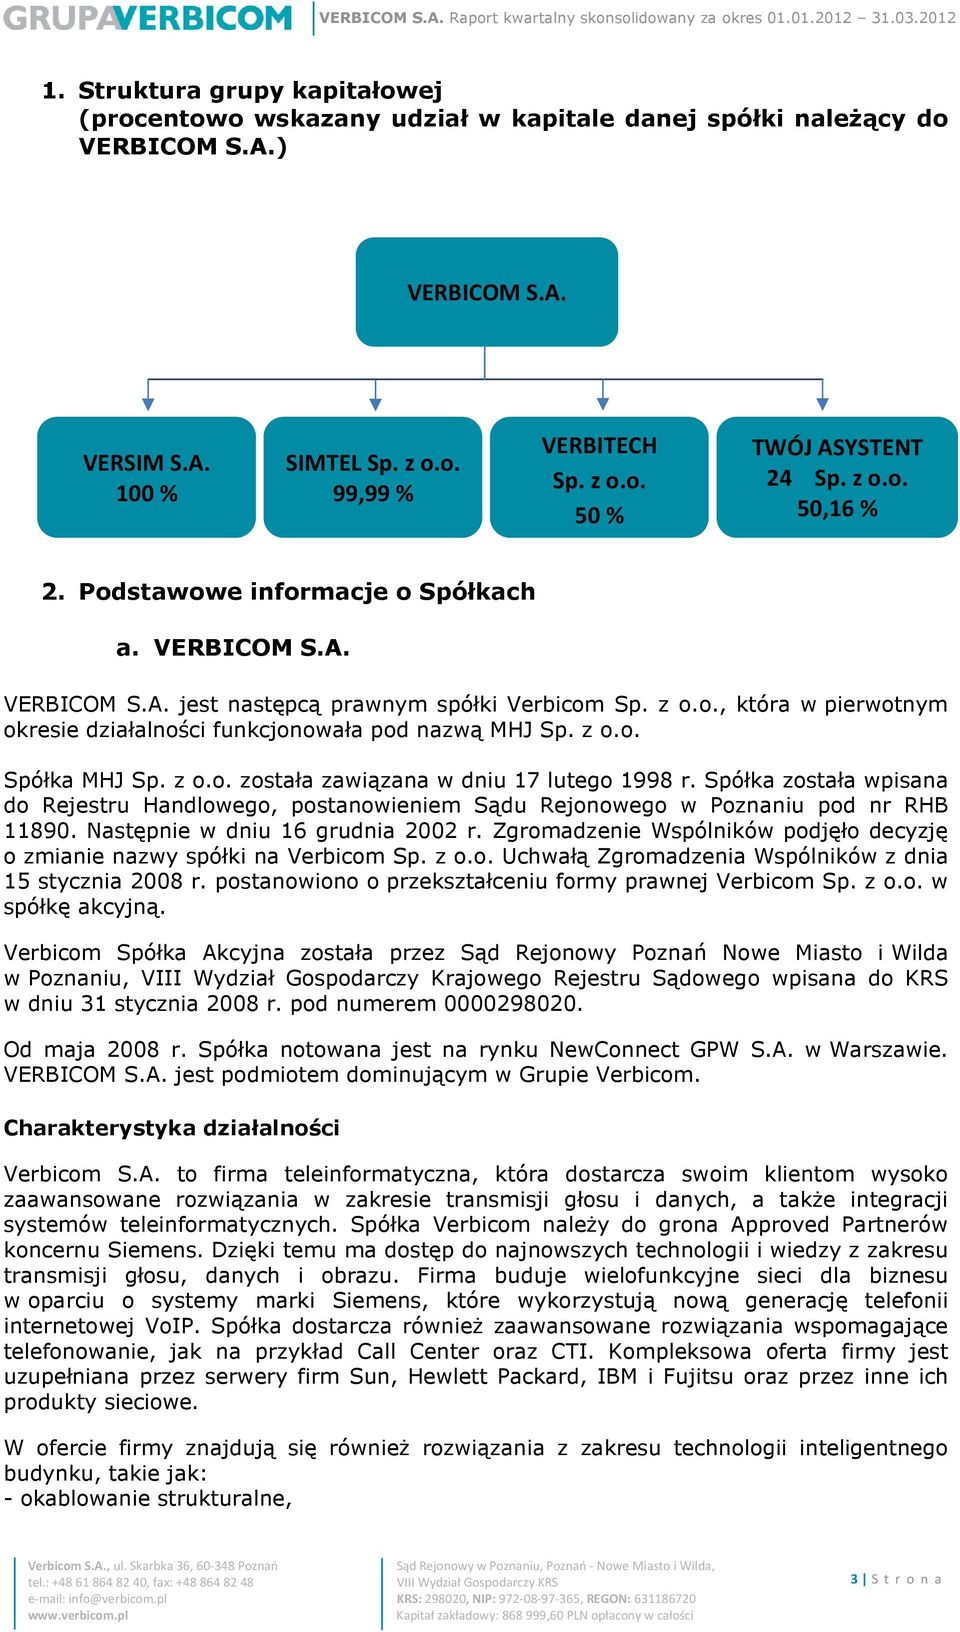 z o.o. Spółka MHJ Sp. z o.o. została zawiązana w dniu 17 lutego 1998 r. Spółka została wpisana do Rejestru Handlowego, postanowieniem Sądu Rejonowego w Poznaniu pod nr RHB 11890.